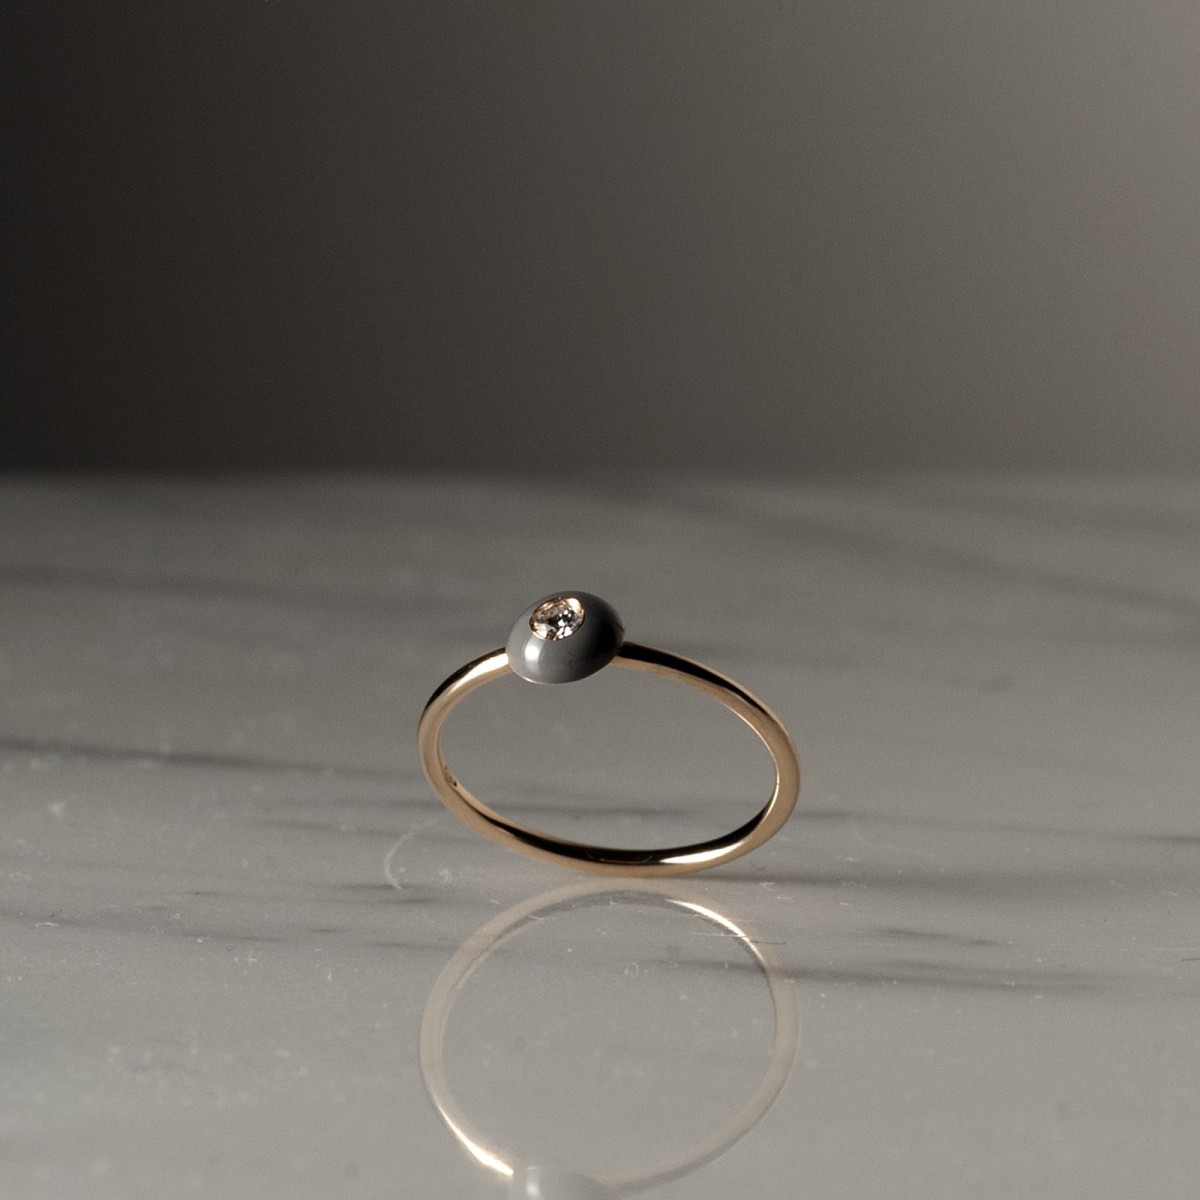 FUTURE PM 2137 - Handmade ring